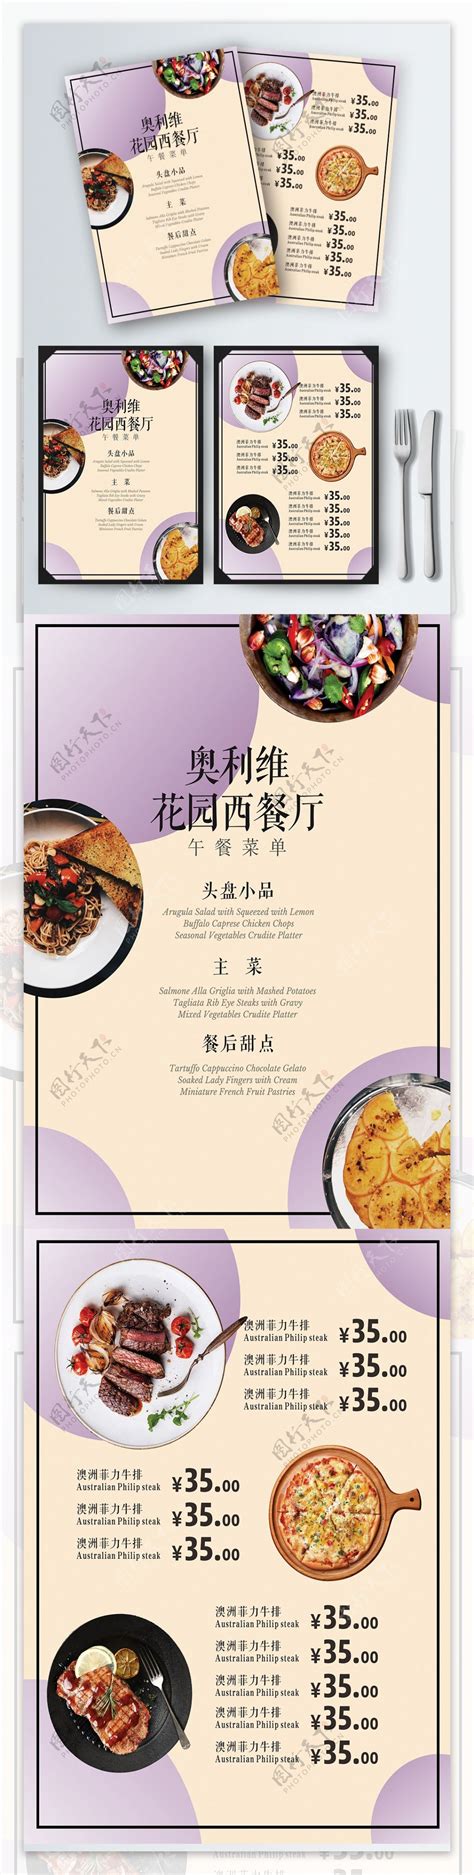 昵菜谱西餐 (图文兼备设计风格) 西餐厅菜单